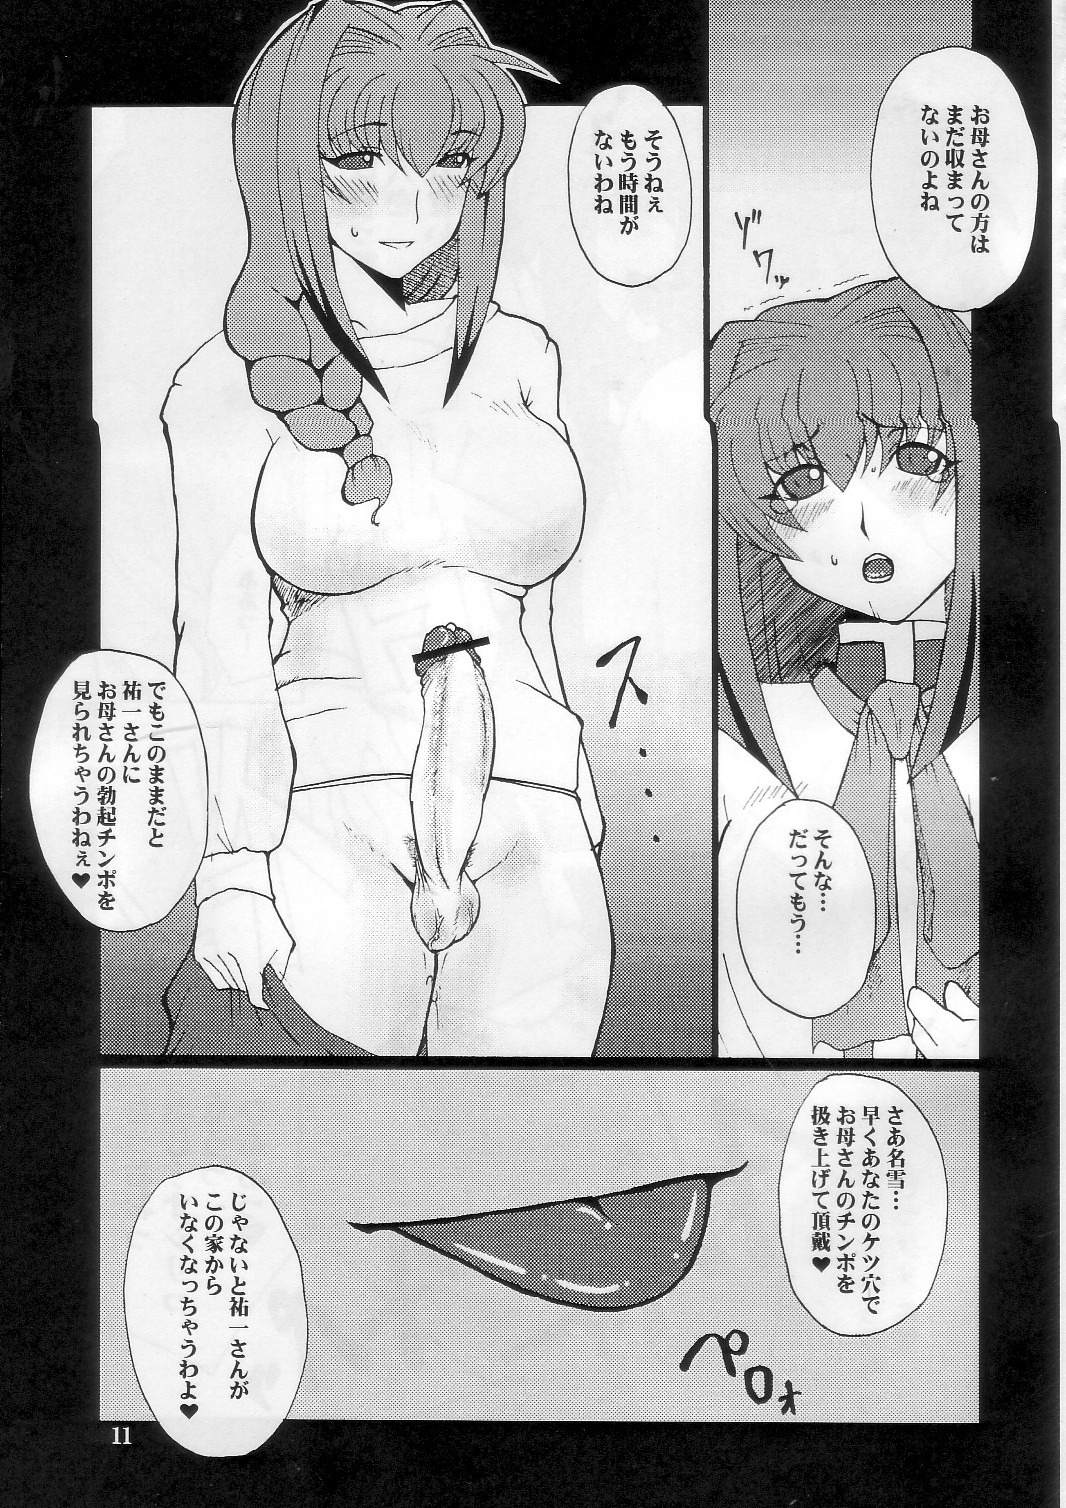 [Hanjuku Yude Tamago] Kyouki vol.5 (Kanon) page 11 full